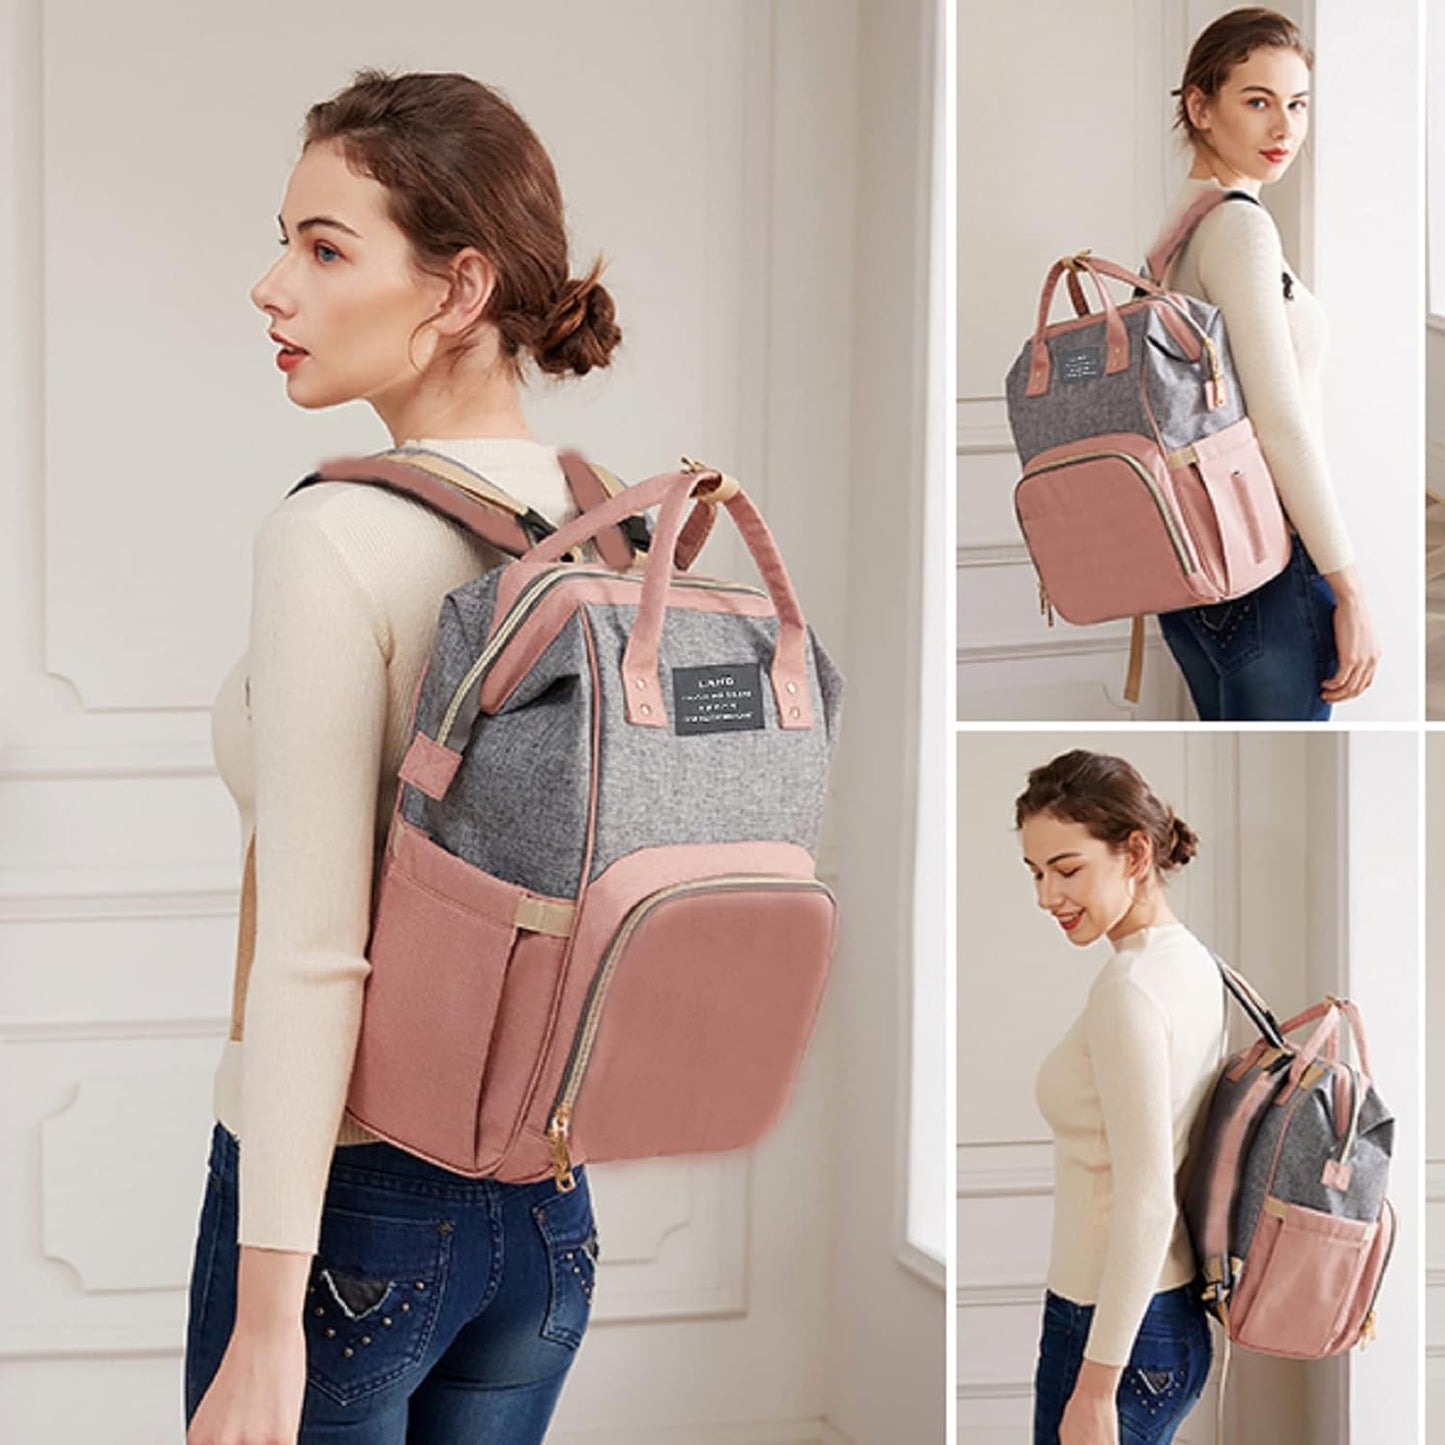 Homelae™ 7-in-1 Diaper Bag Backpack